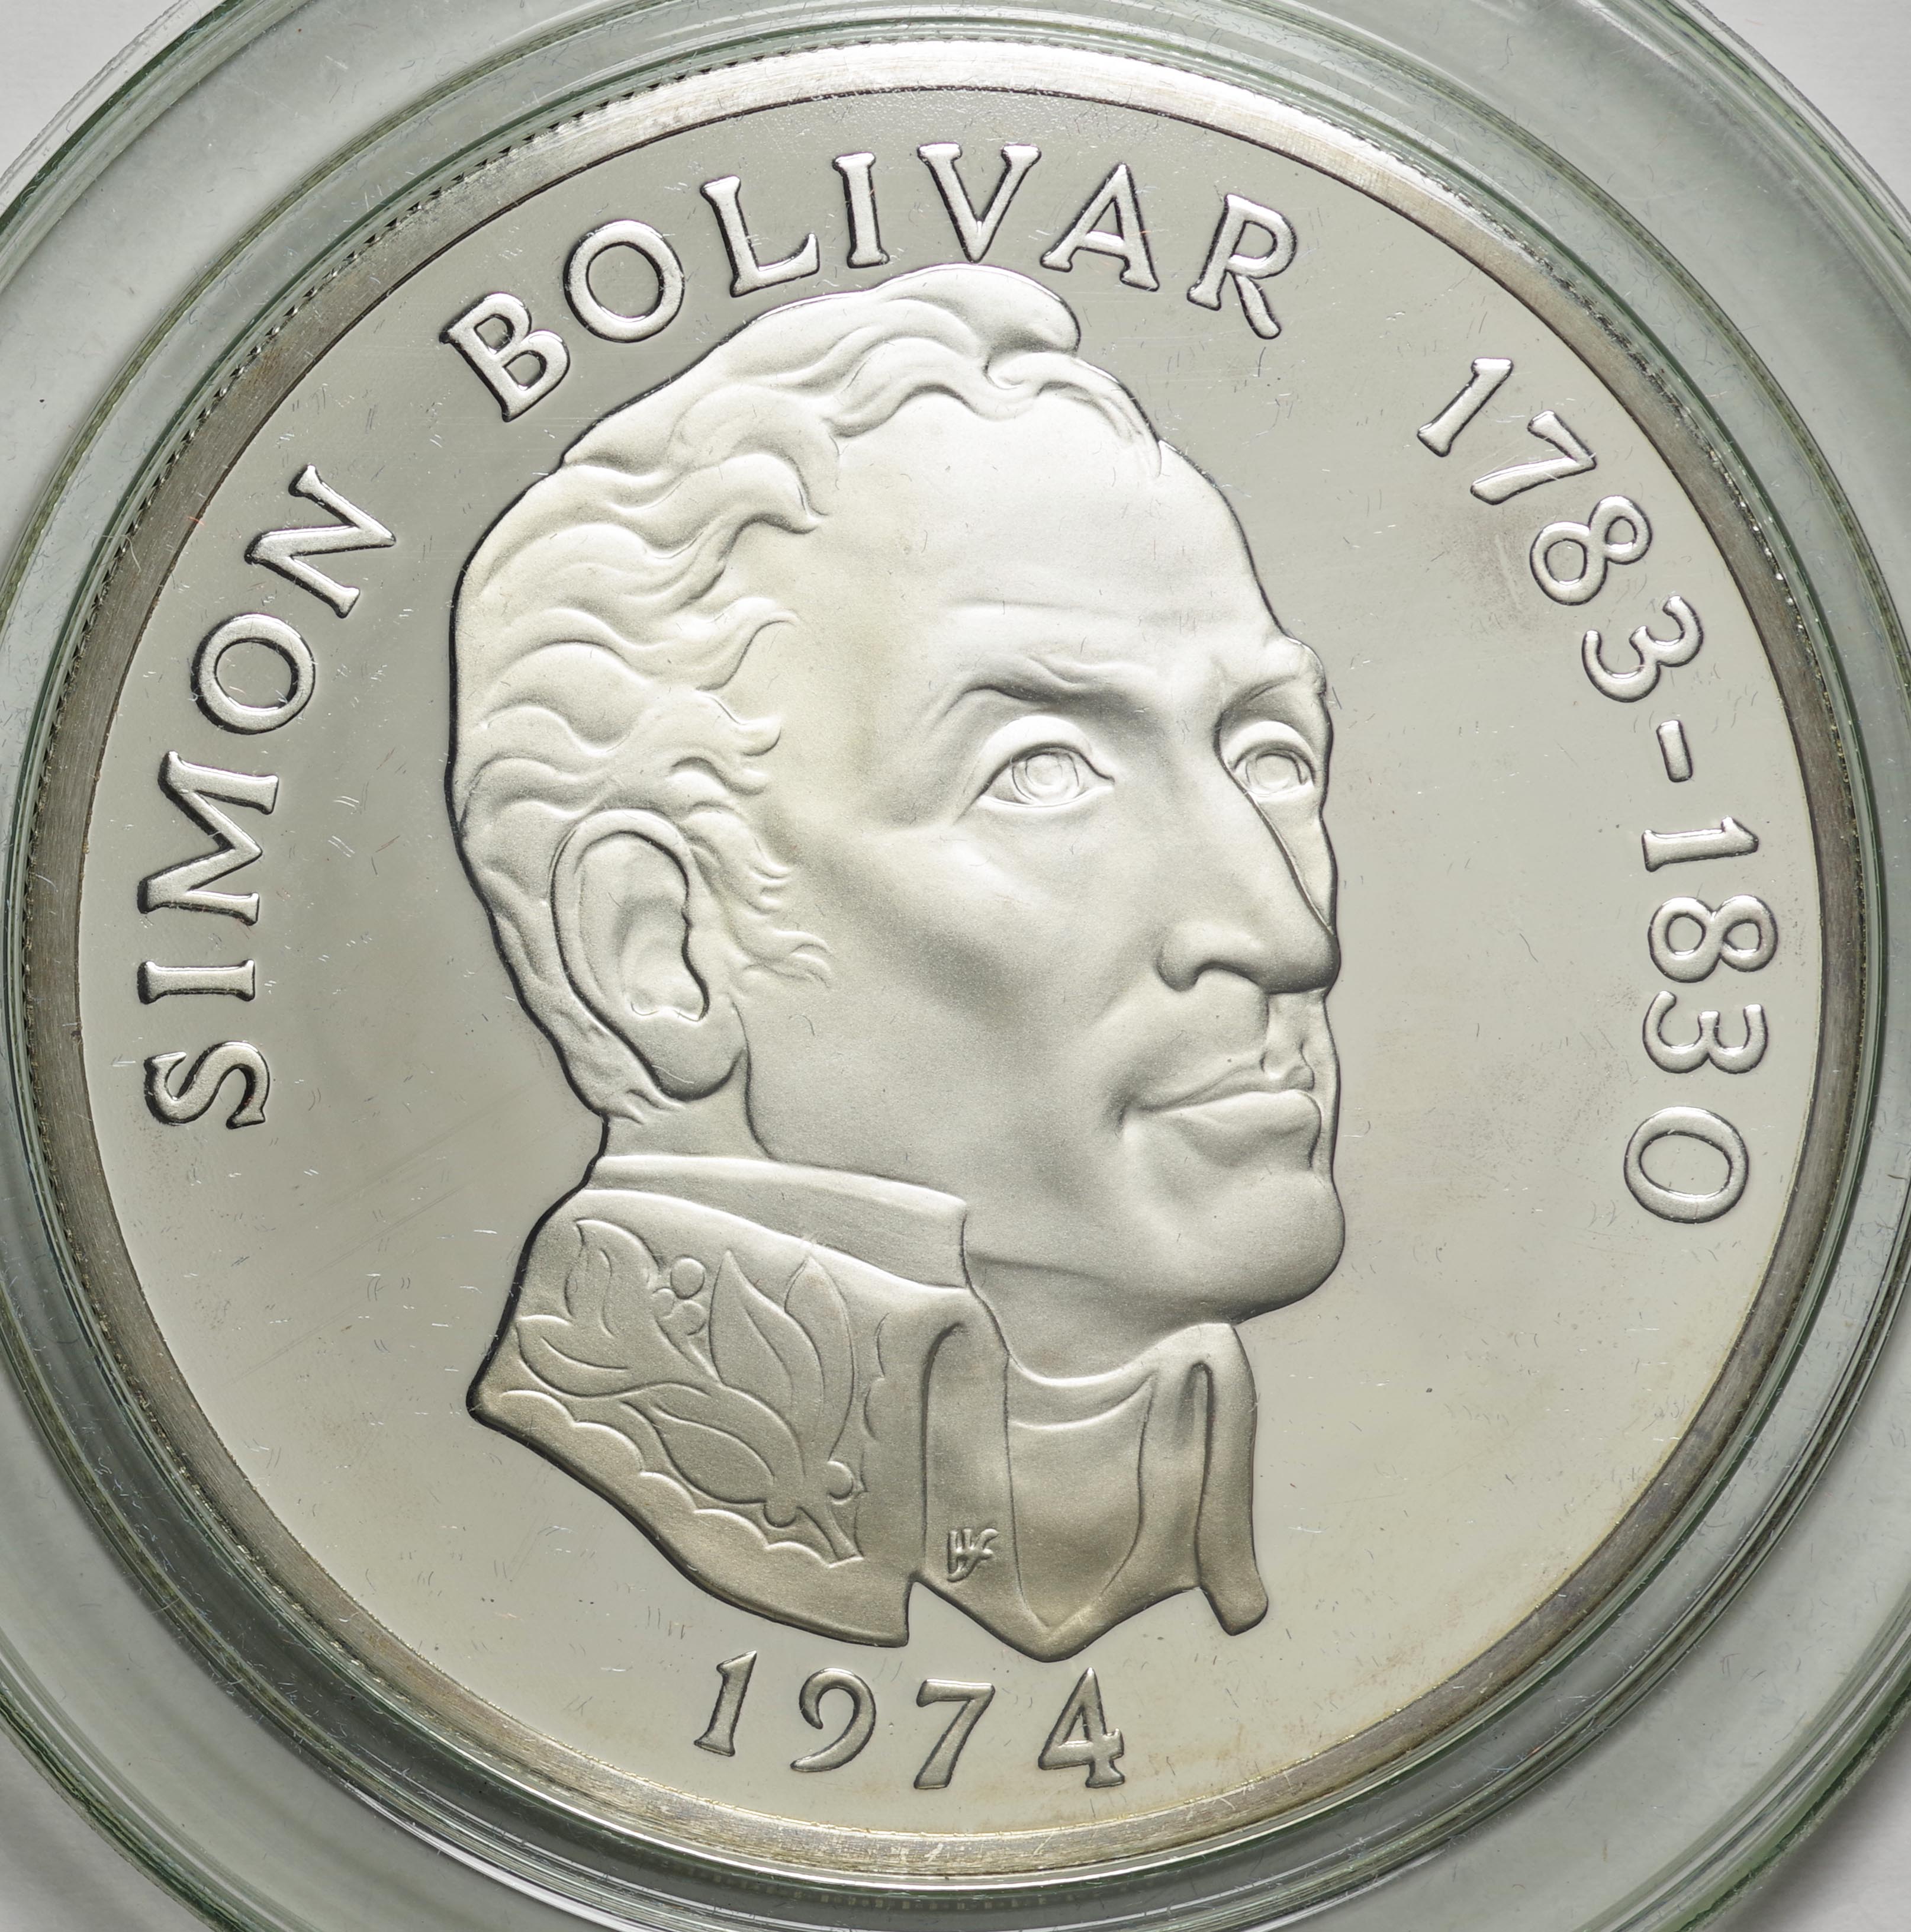 パナマ-Panama. シモン・ボリバール像 20バルボア銀貨 1974年